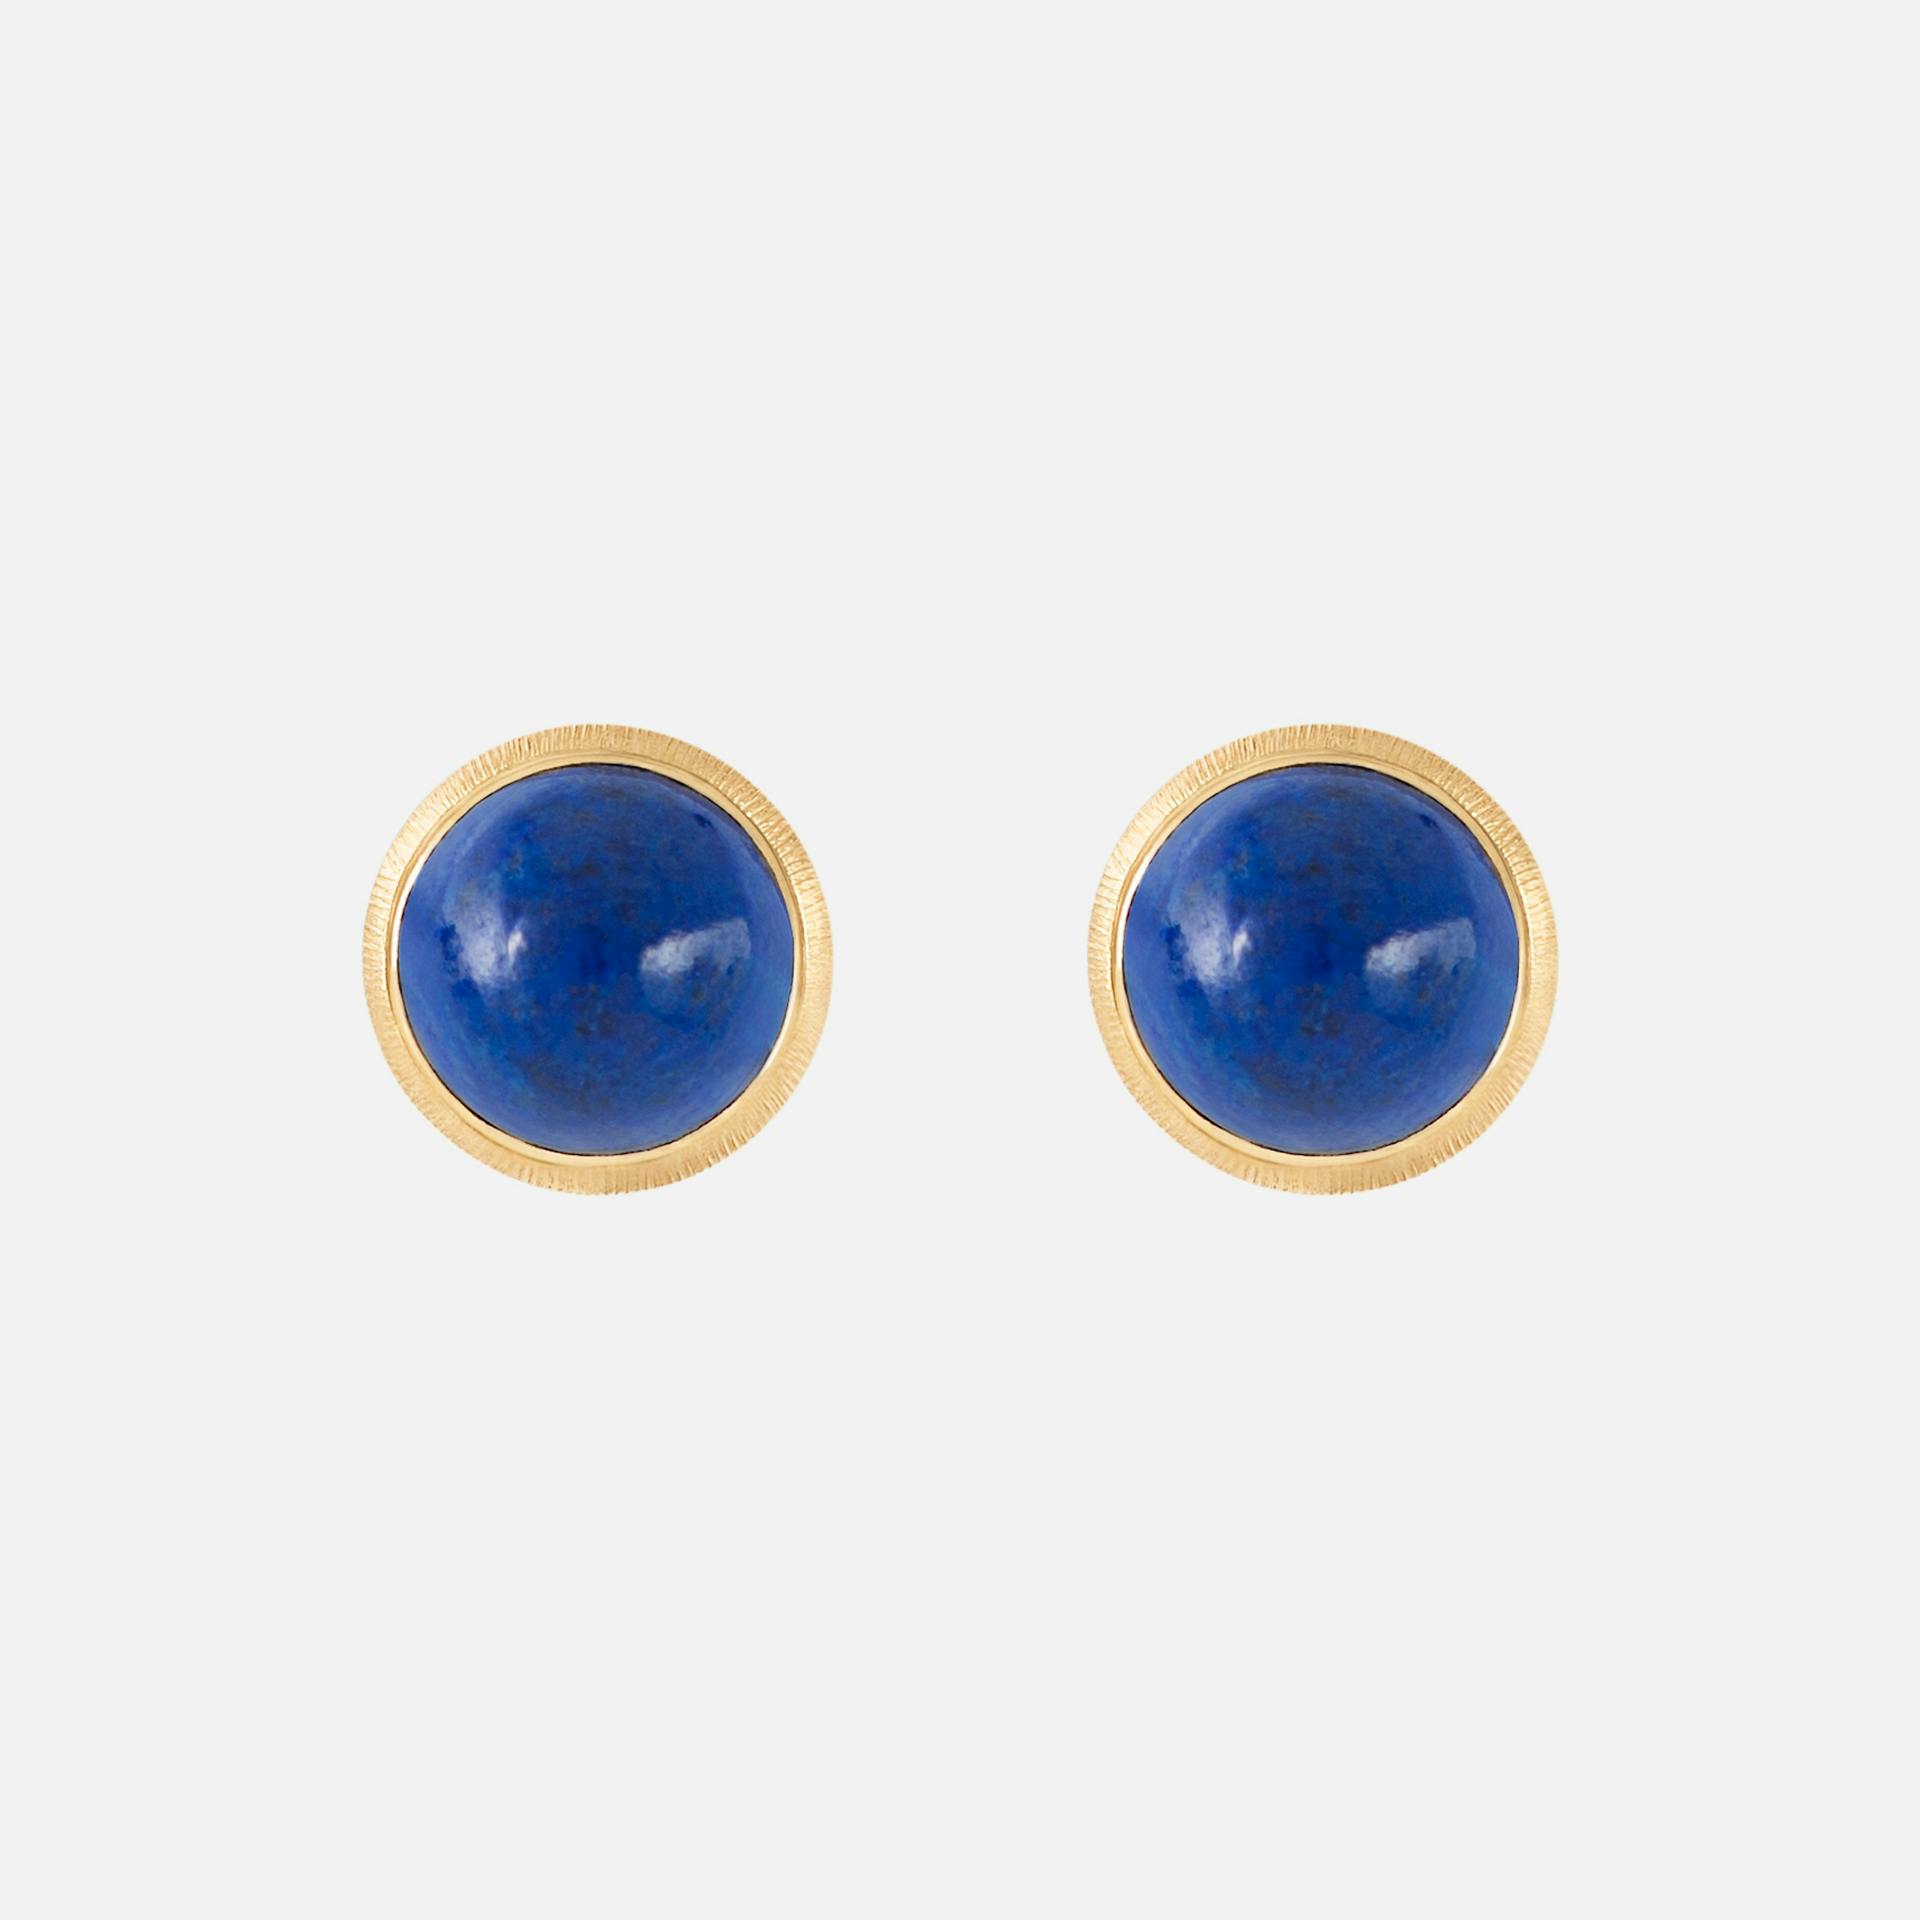 Lotus Stud Earrings in 18 Karat Gold with Lapis Lazuli  |  Ole Lynggaard Copenhagen 